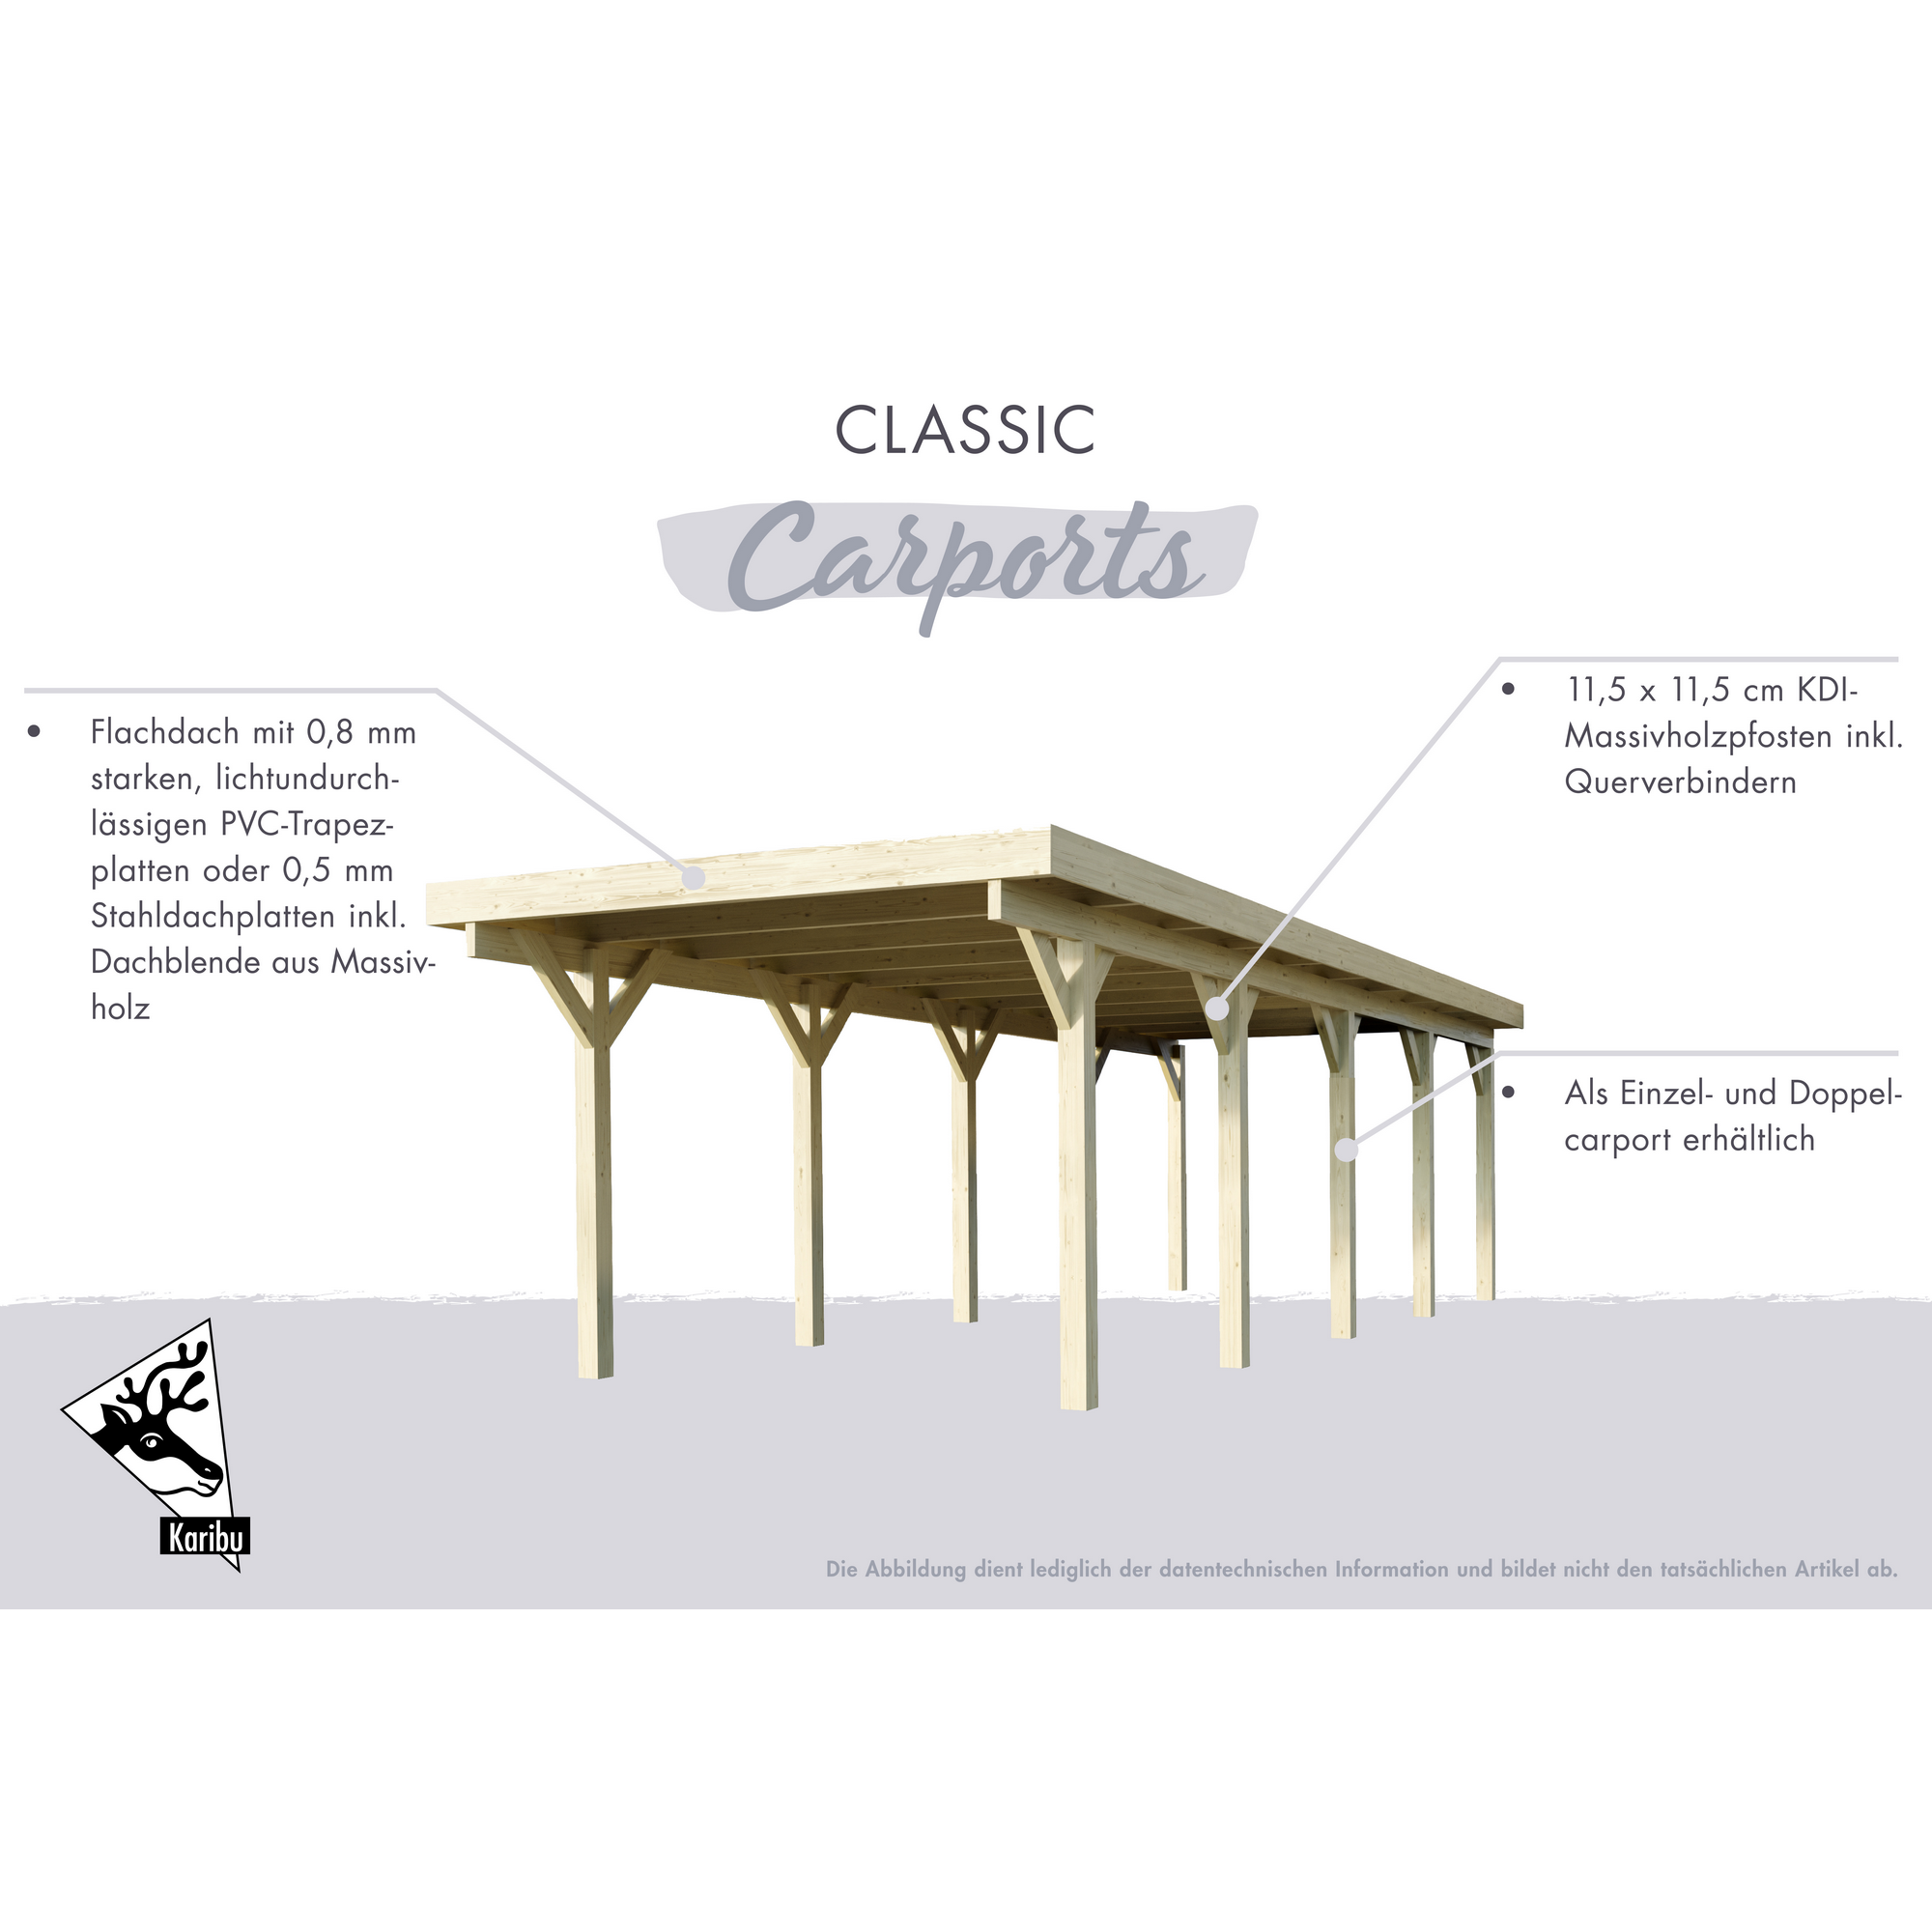 Einzelcarport 'Carlos 1' Kiefer PVC-Dach mit zwei Einfahrtsbögen 480 x 318 x 234 cm + product picture